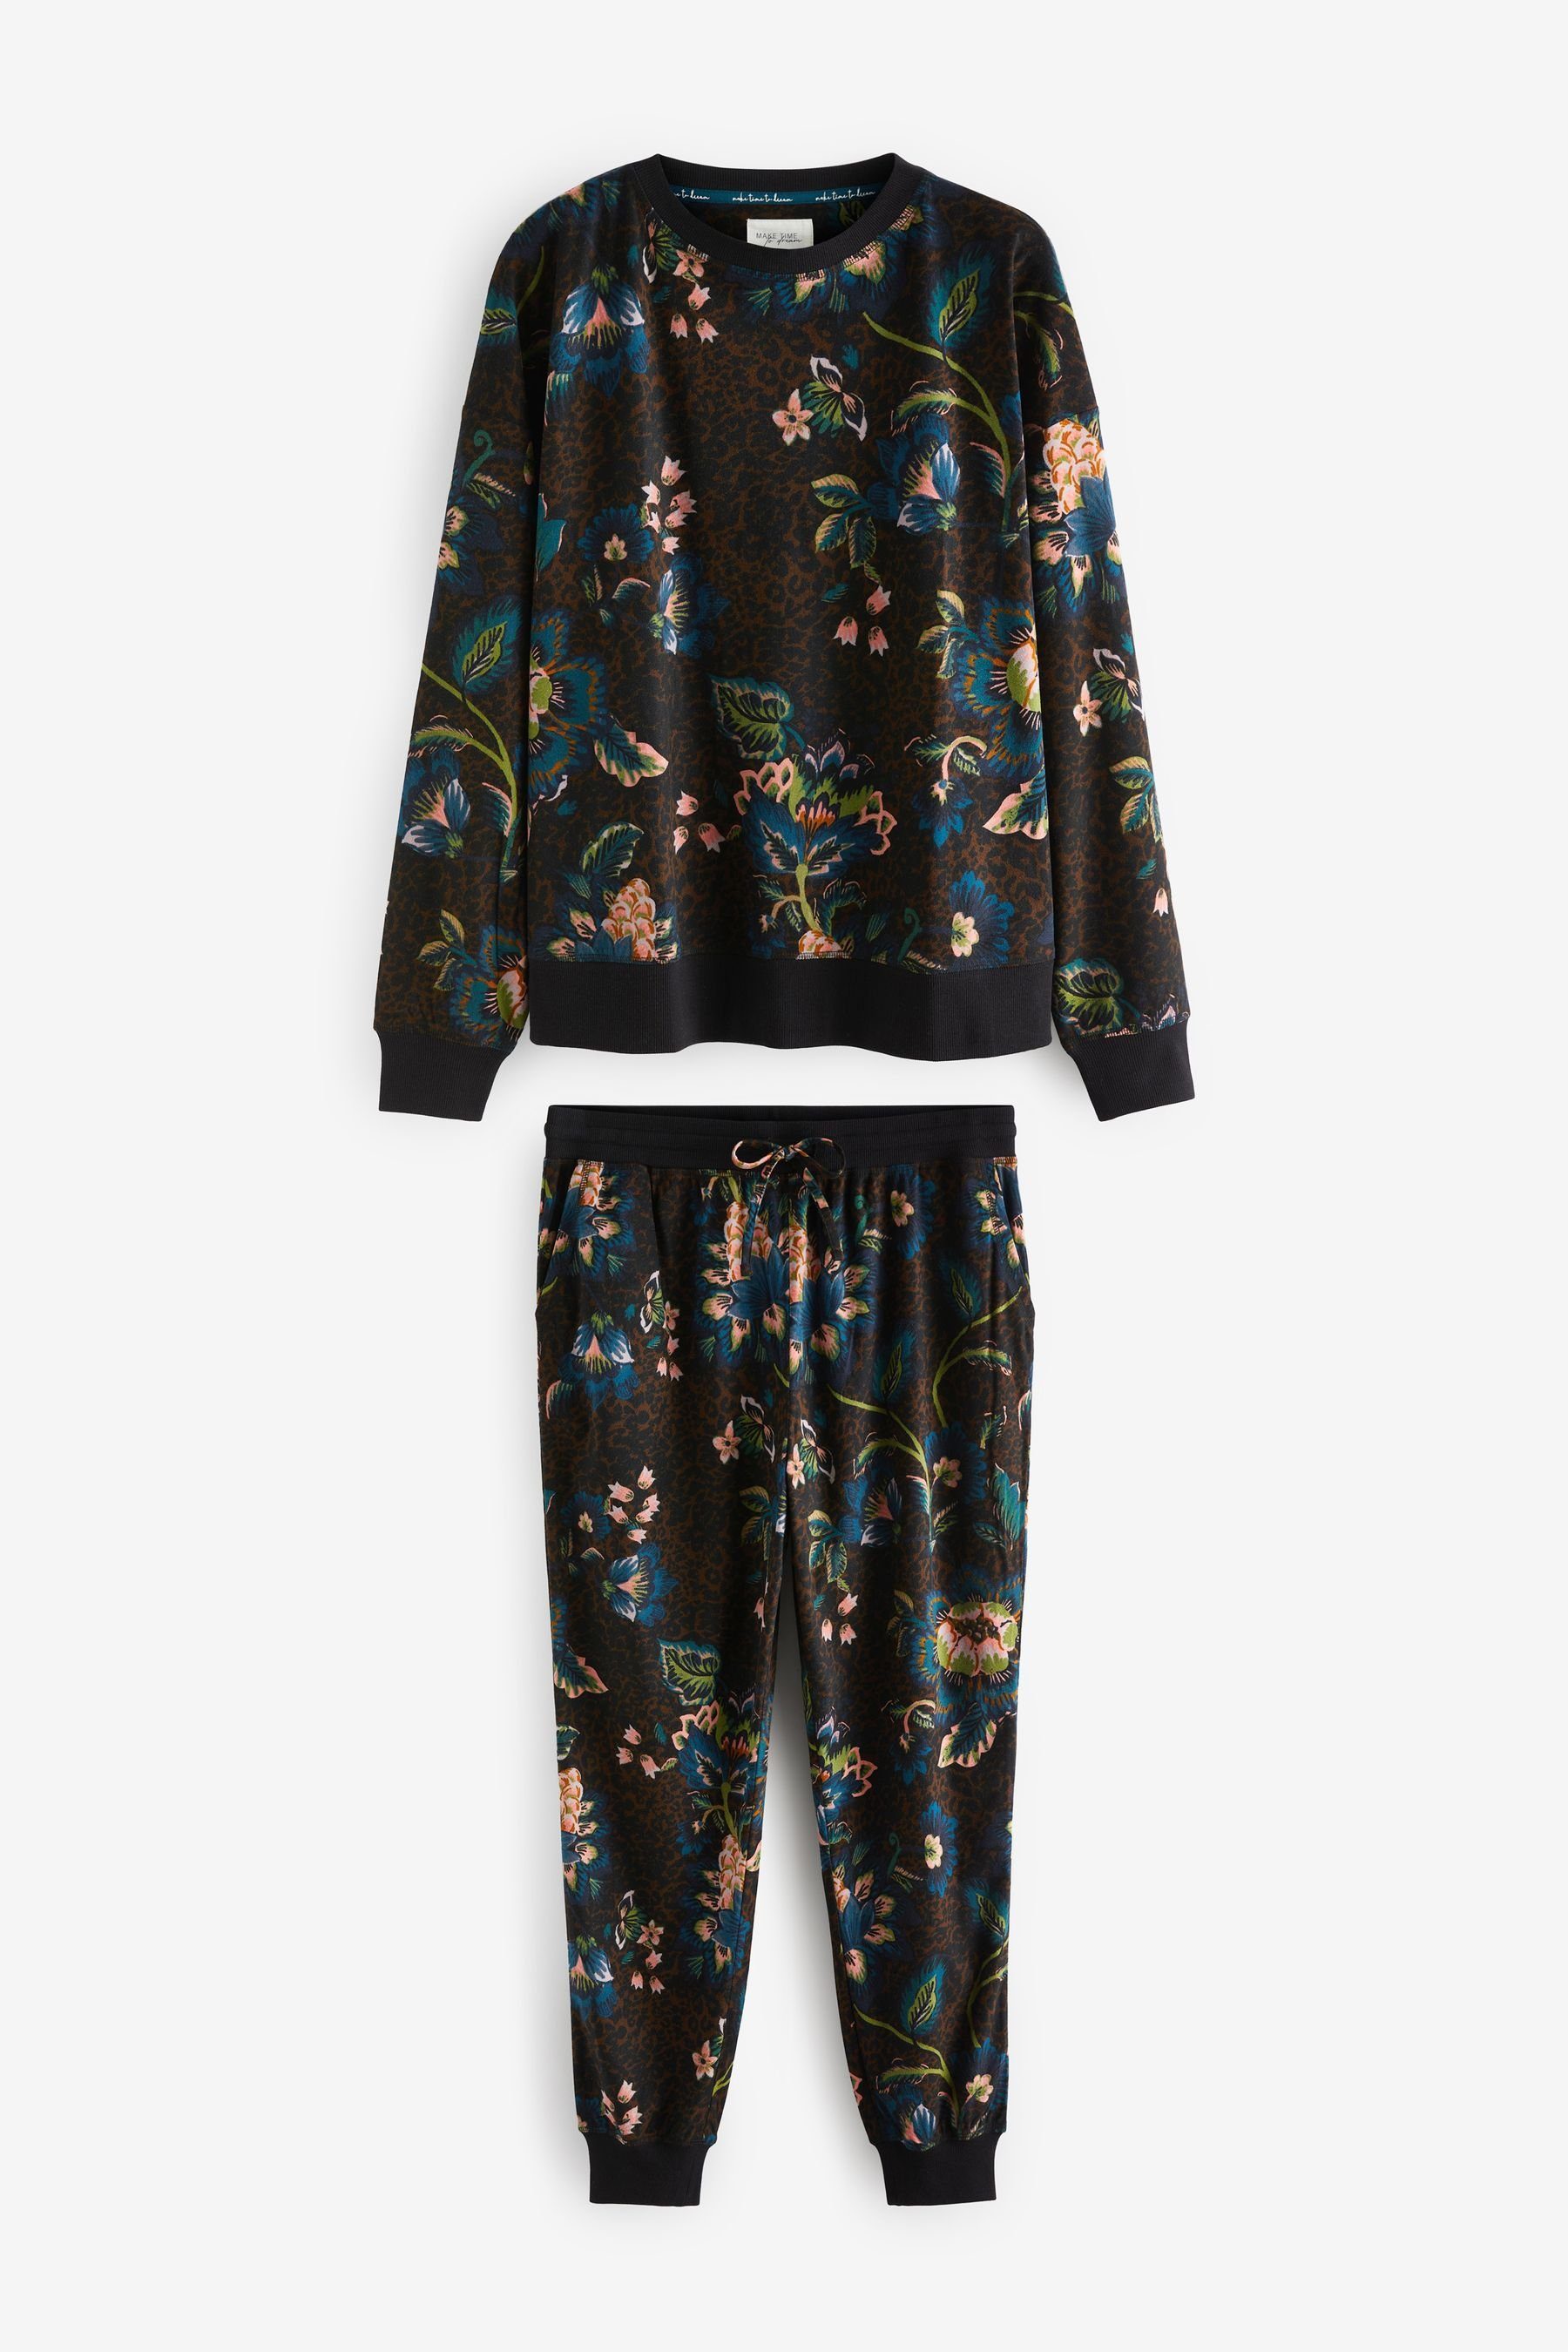 Next Pyjama Bequemer und superweicher Pyjama (2 tlg) Black Floral